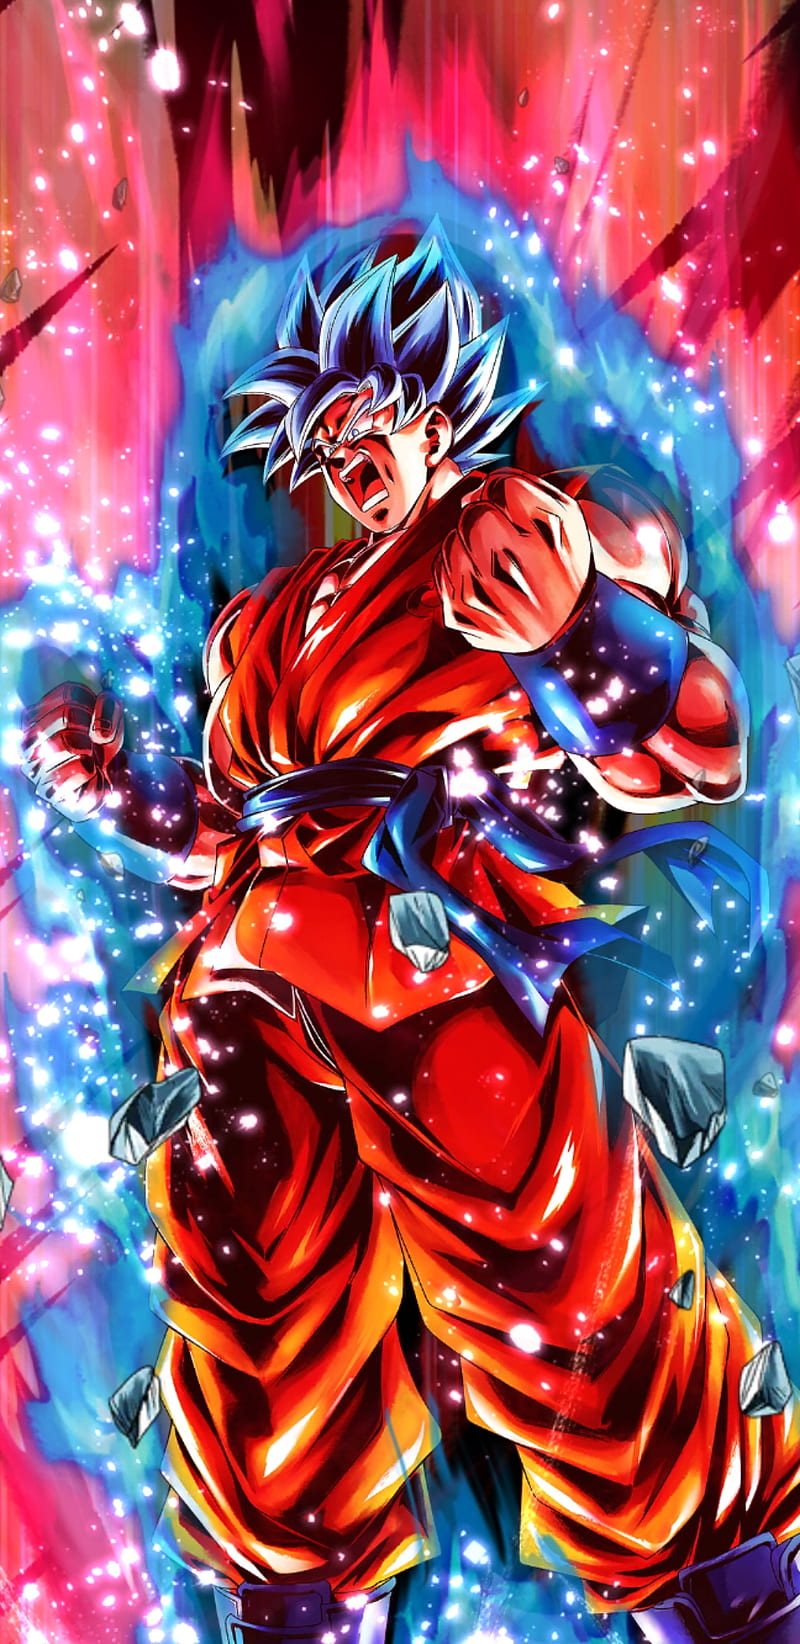 Những hình nền đẹp về Goku sẽ khiến bạn càng yêu thích nhân vật này hơn khi được ngắm nhìn hình ảnh anh chàng trong những tư thế chiến đấu đầy cuồng nhiệt.